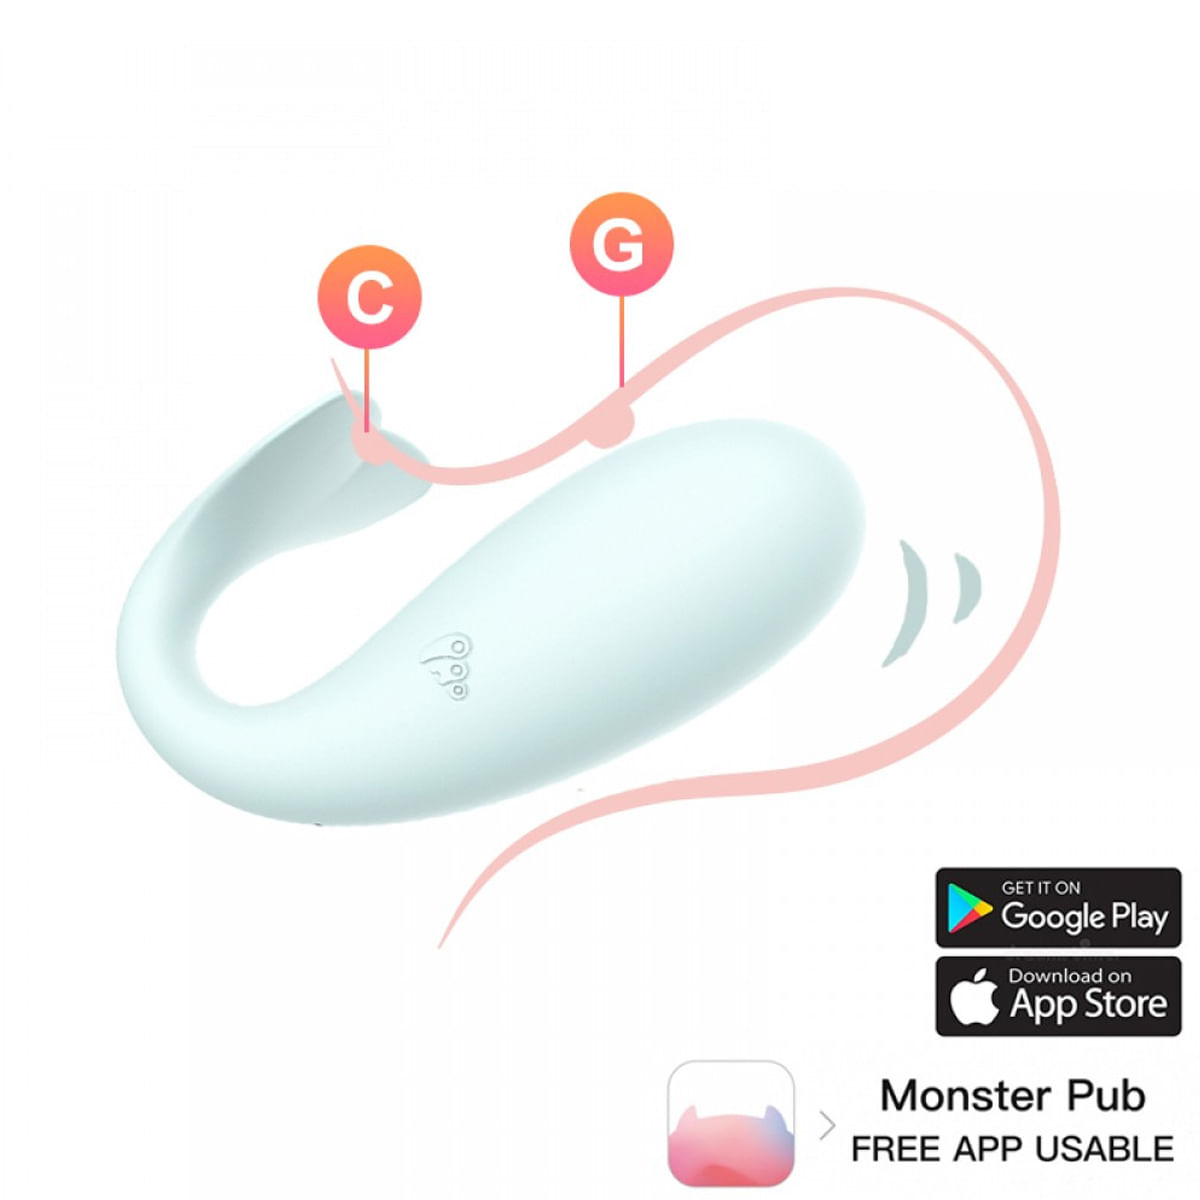 Monster Pub 1X Excited Doctor Whale Cápsula Vibratória com 8 Modos de Vibração Vip Mix